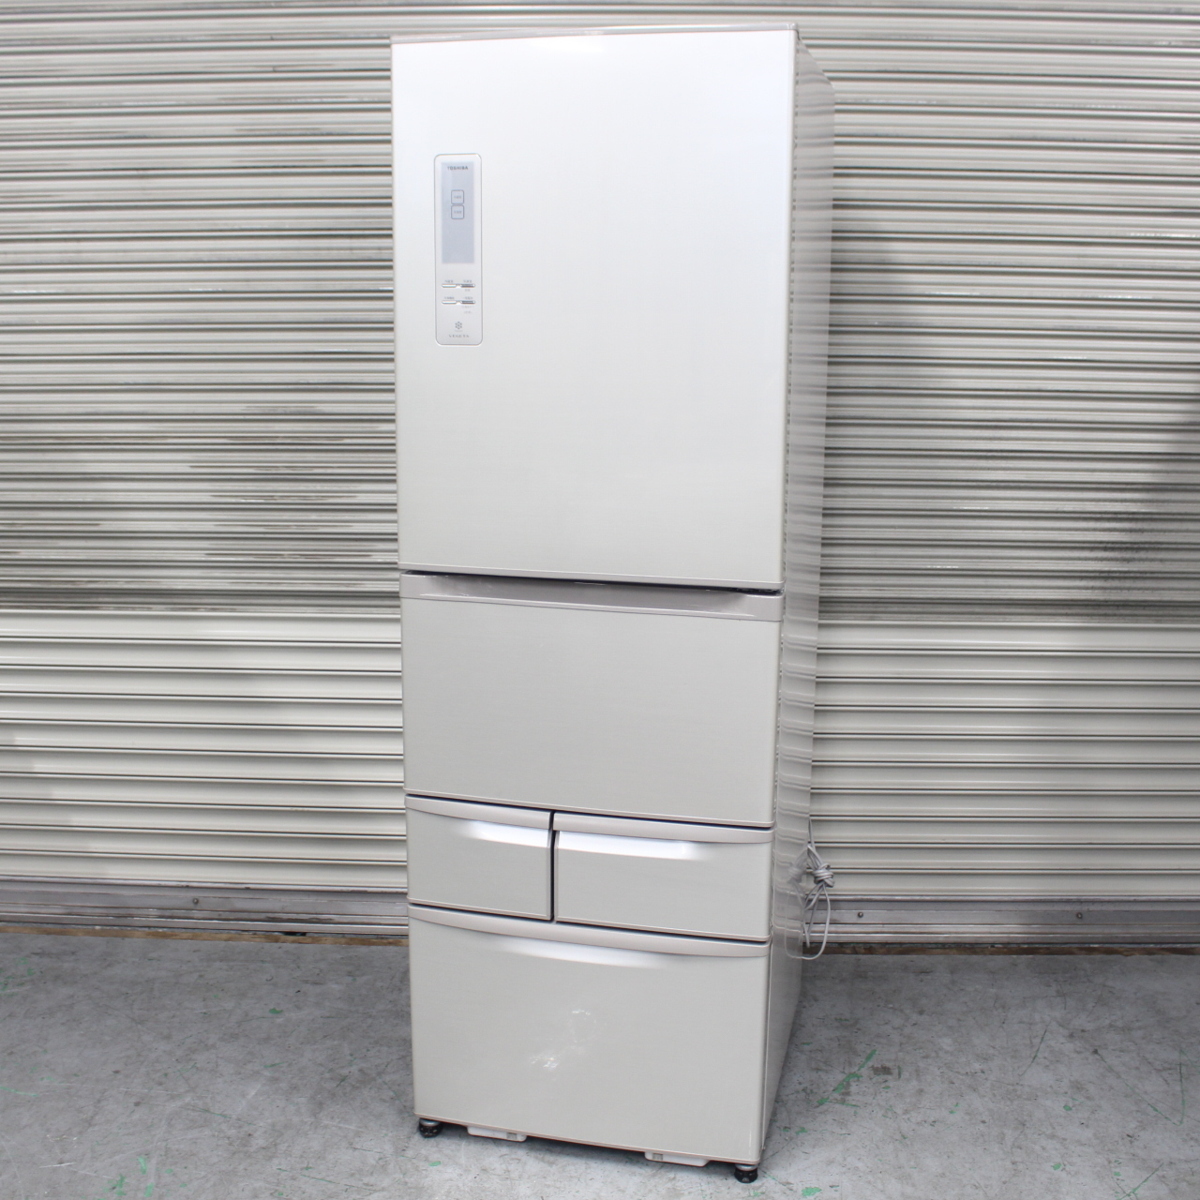 横浜市港北区にて 東芝 冷蔵庫 GR-432GS 2012年製 を出張買取させて頂きました。